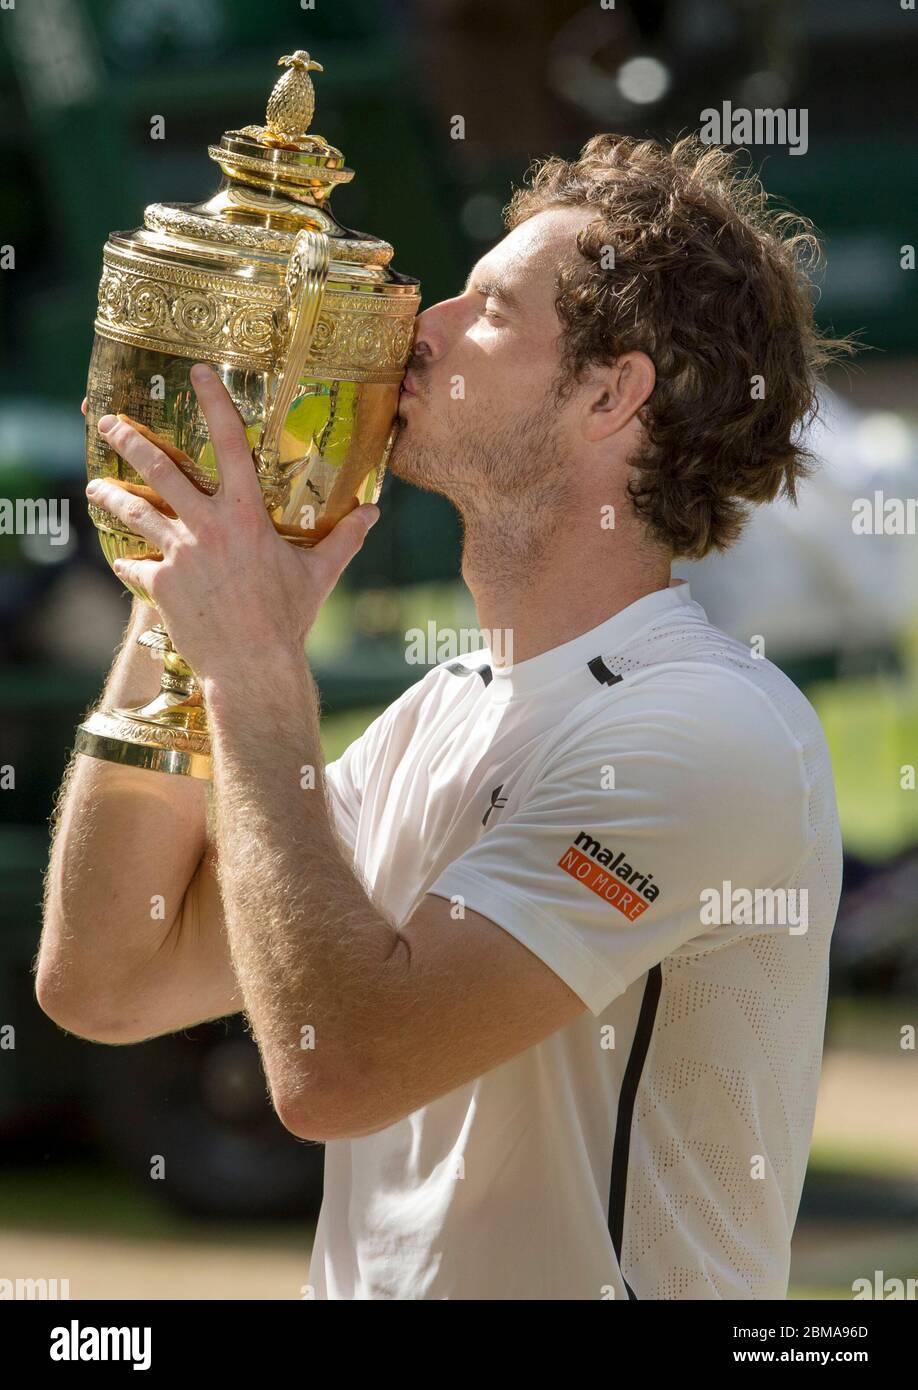 10 juillet 2016, Wimbledon, Londres : finale des hommes en célibataires, Centre court, Andy Murray embrasse le trophée de Wimbledon après avoir battu Milos Raonic du Canada. Banque D'Images